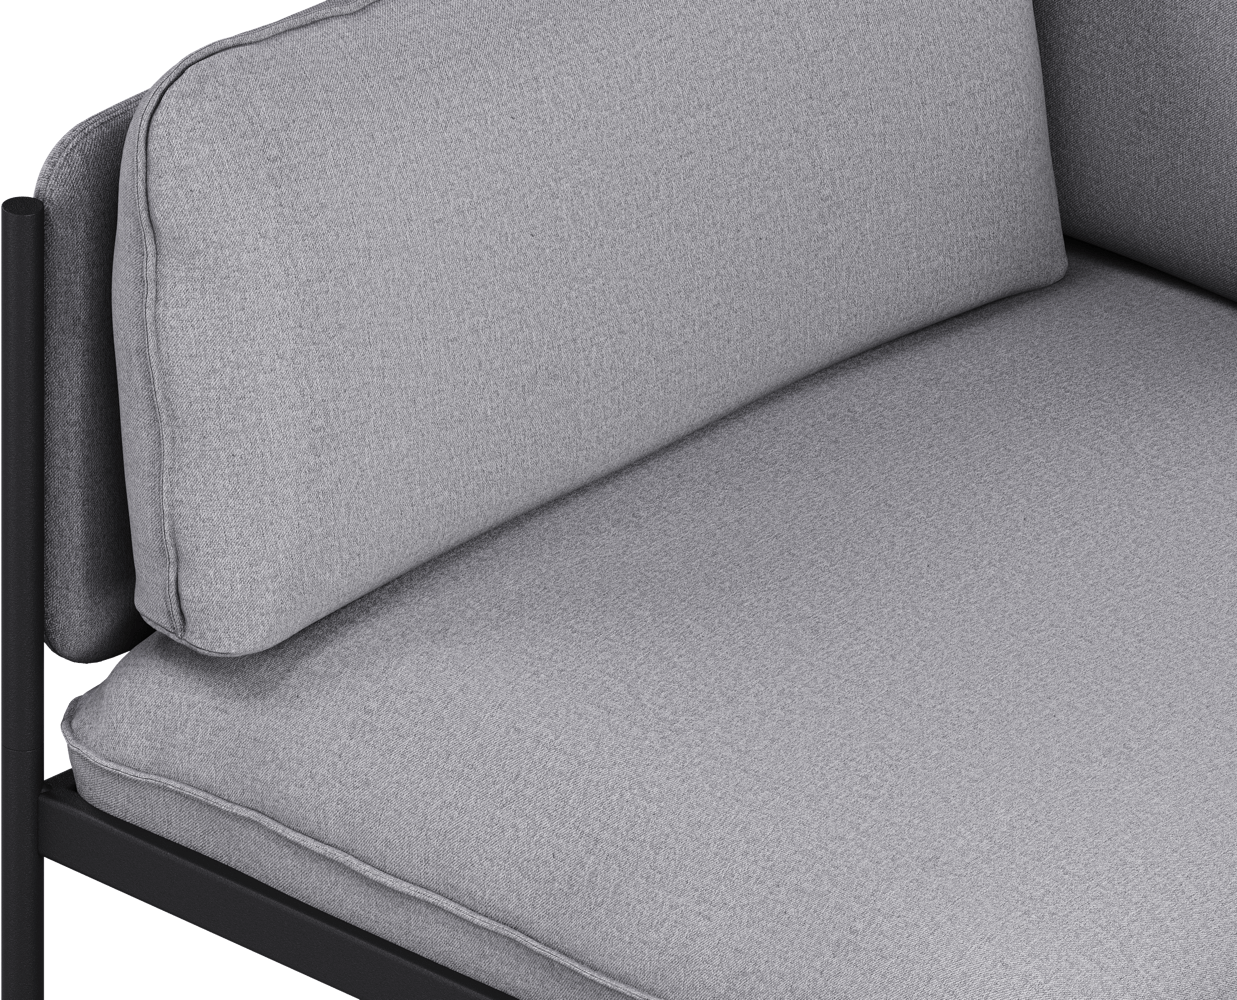 Toom Modular Sofa 3-Sitzer Konfiguration 2 in Pale Grey  präsentiert im Onlineshop von KAQTU Design AG. 3er Sofa ist von Noo.ma